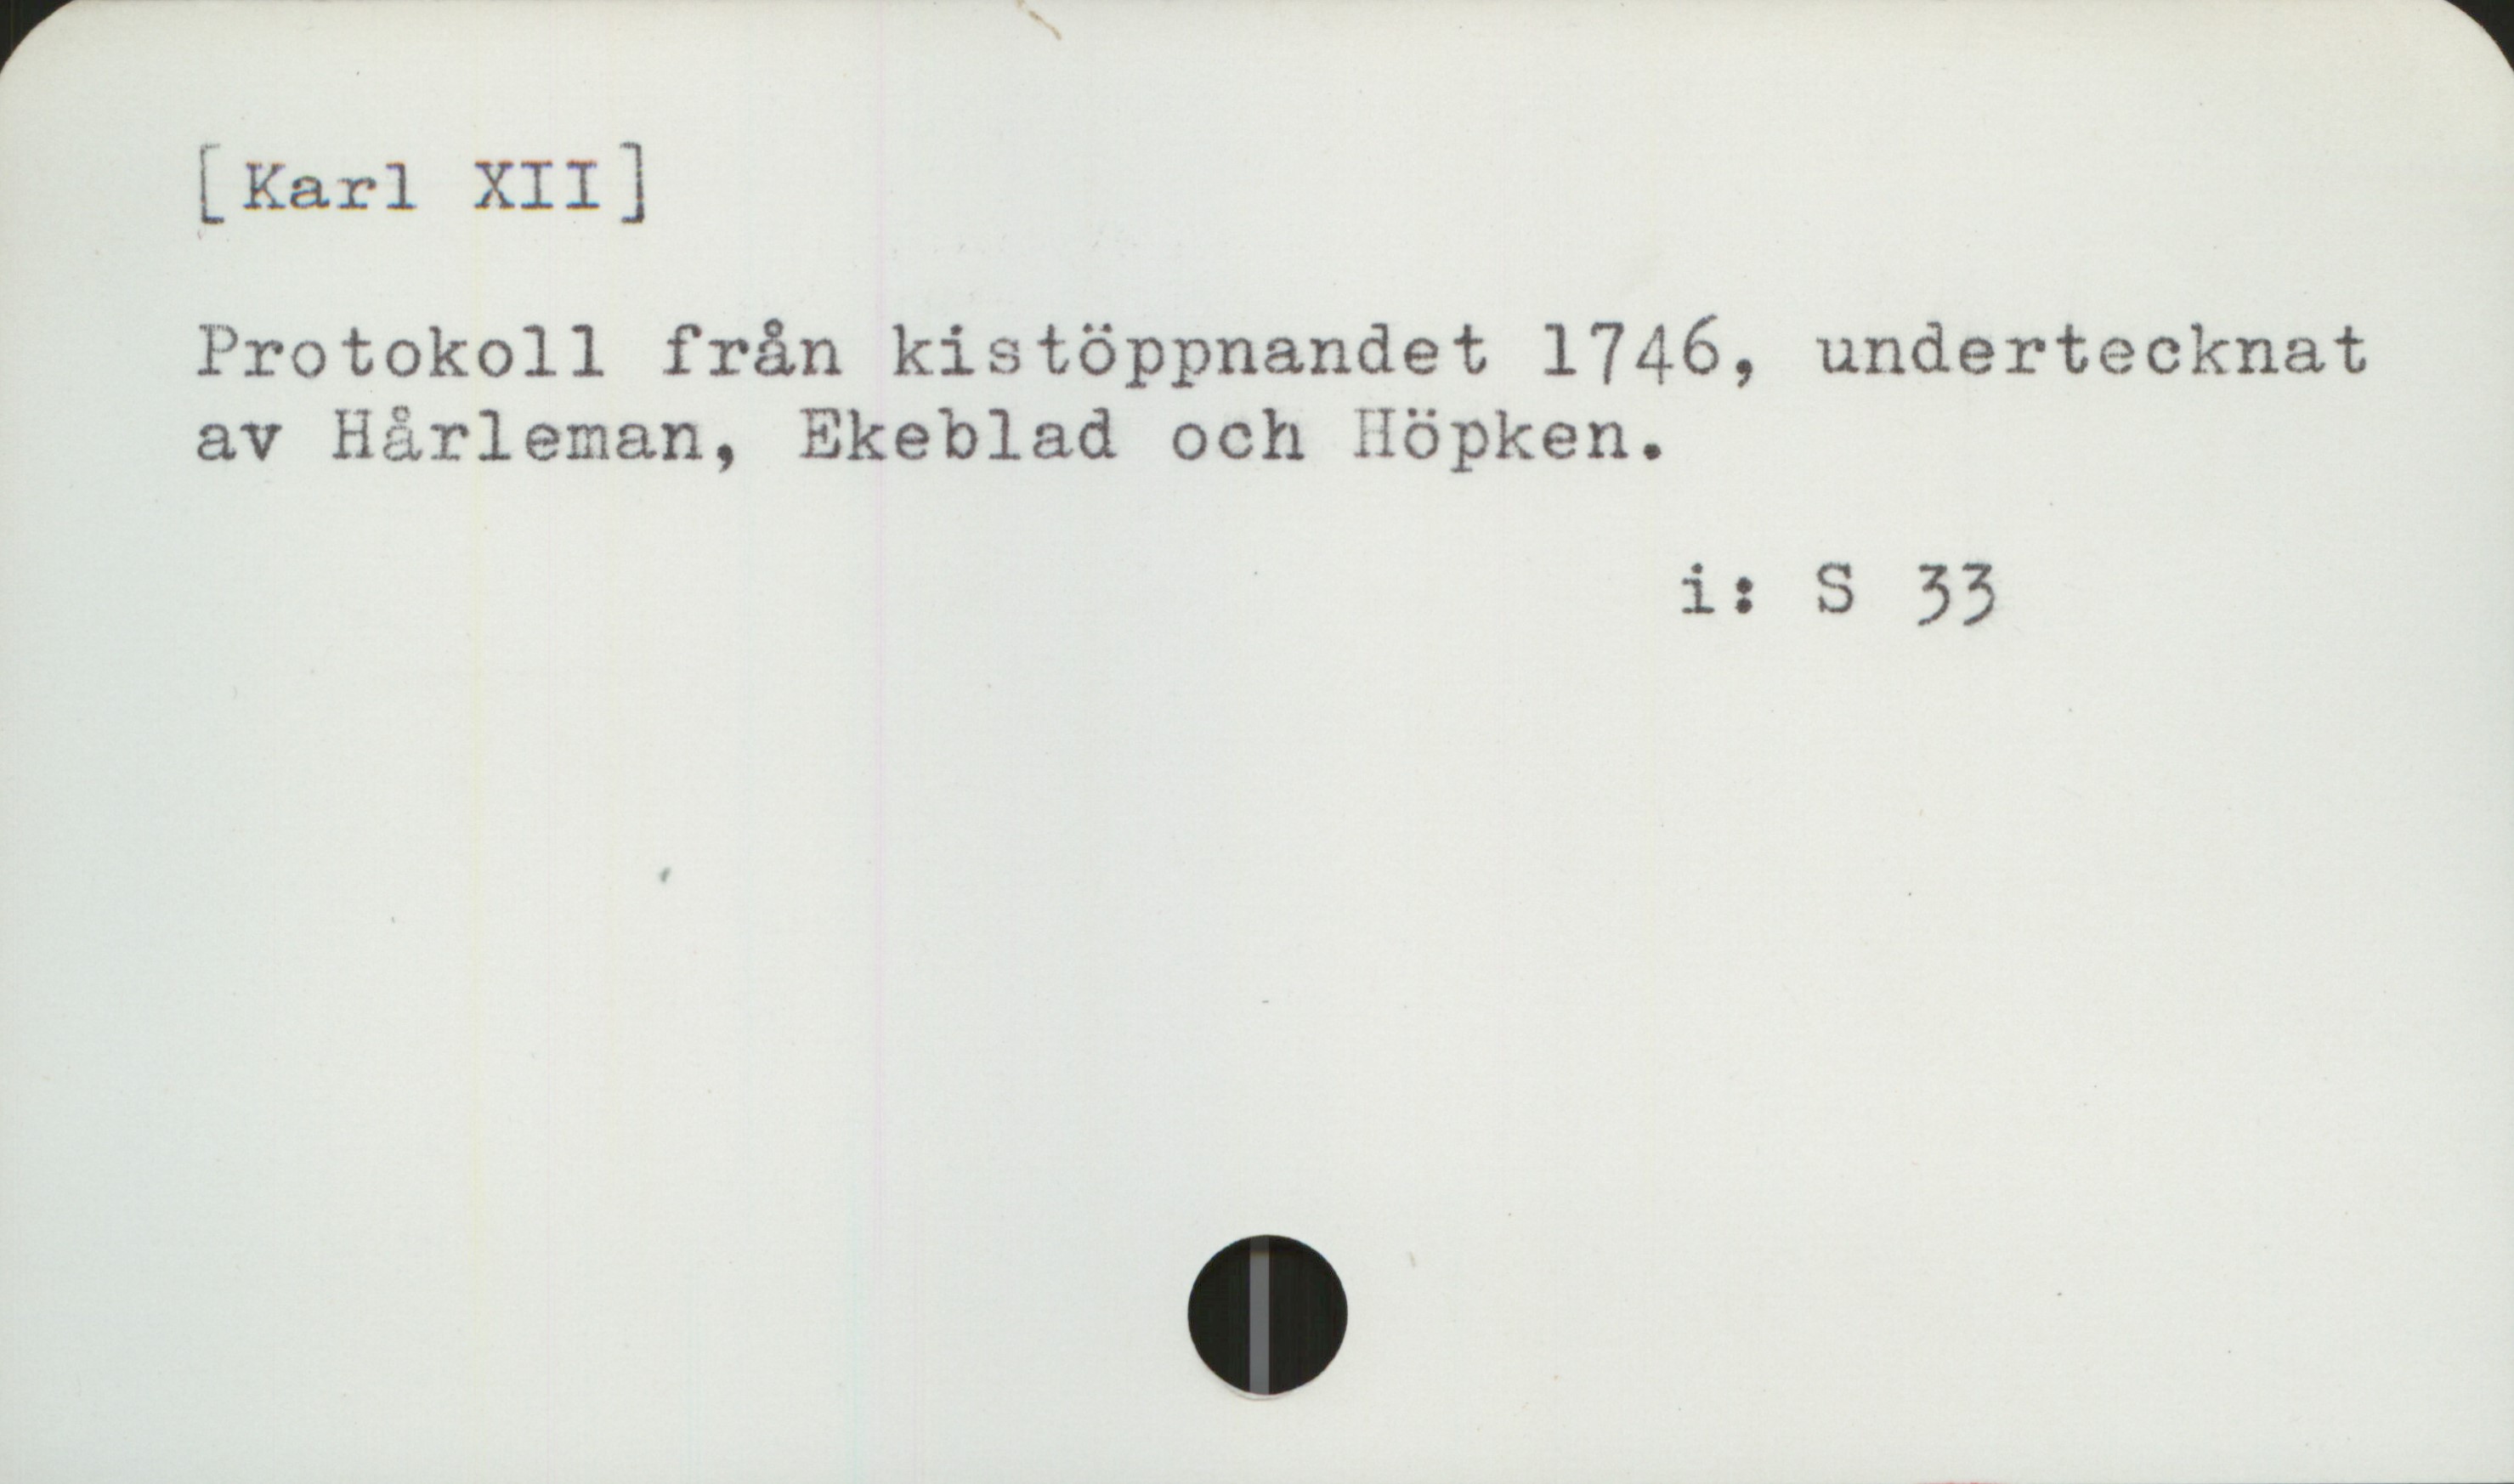  [Karl XII]
Protokoll från kistöppnandet 1746, undertecknat
av Hårleman, Ekeblad och Höpken.

is S 33

